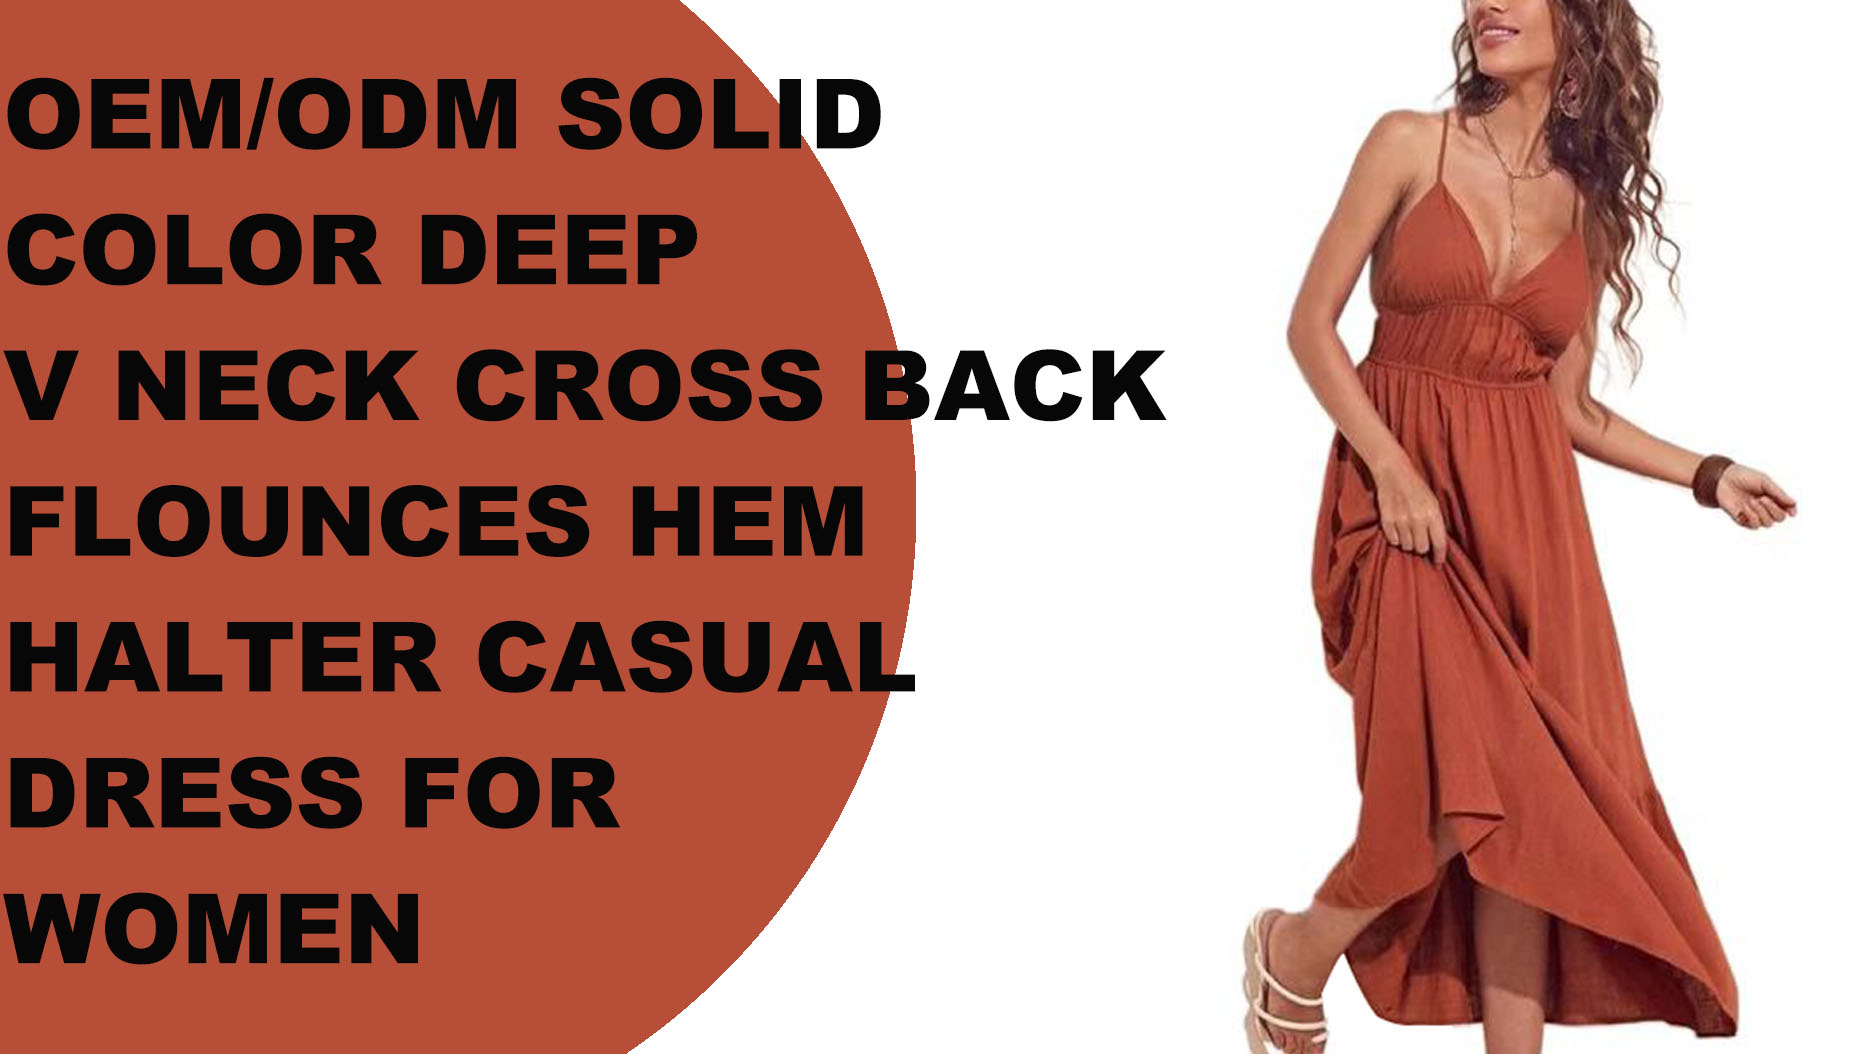 डीप वी नेक क्रॉस कैज़ुअल ड्रेस महिलाओं के लिए